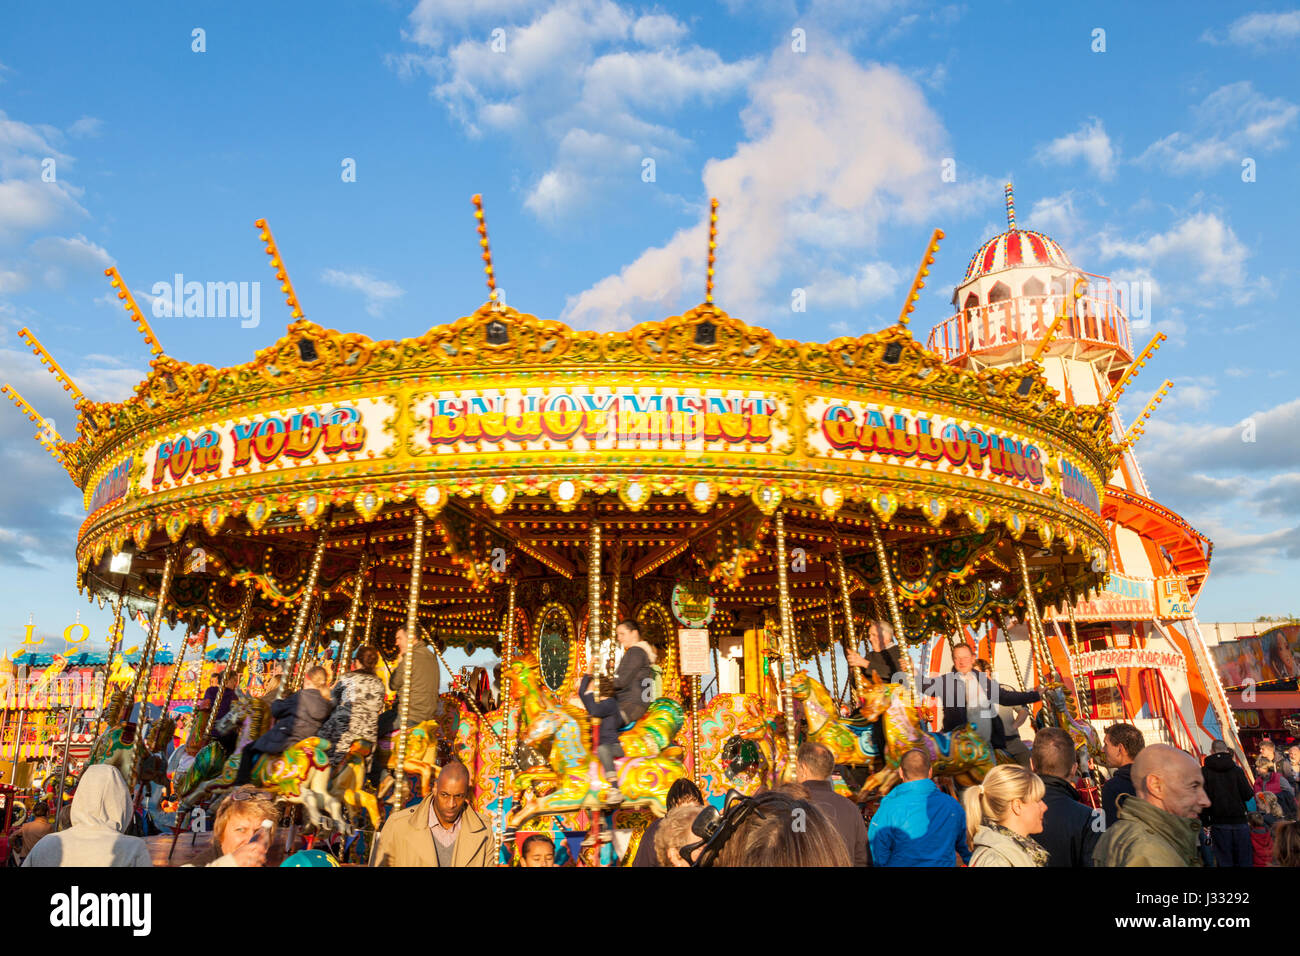 Una folla di persone intorno a un tradizionale fairground ride. A Merry Go Round in serata sole alla fiera d'oca, Nottingham, Inghilterra, Regno Unito Foto Stock